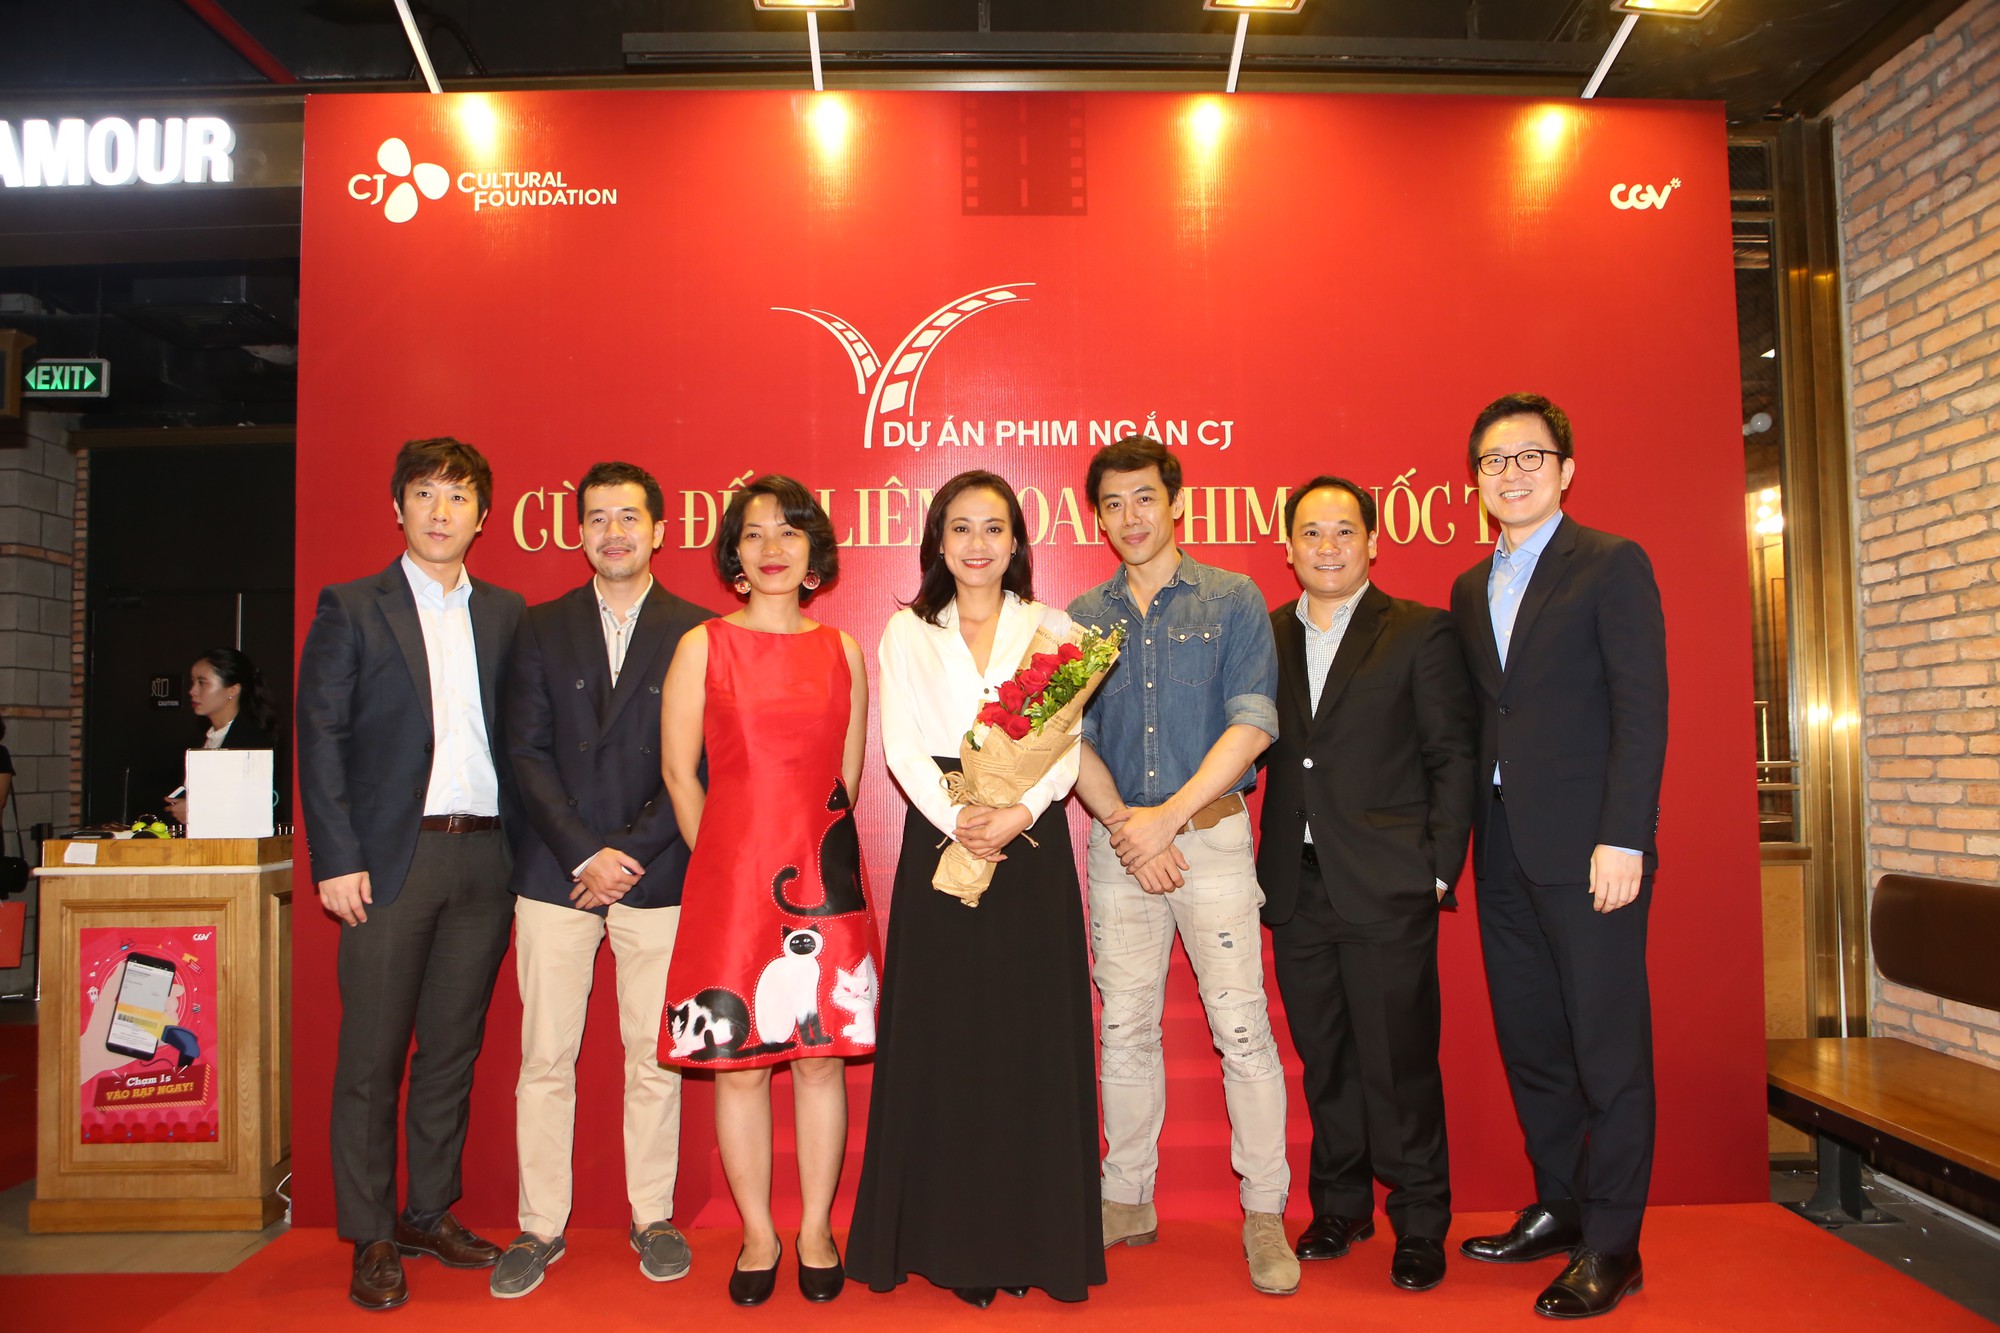 Dự án phim ngắn CJ - Cơ hội cho các nhà làm phim trẻ Việt Nam (22/6/2018)